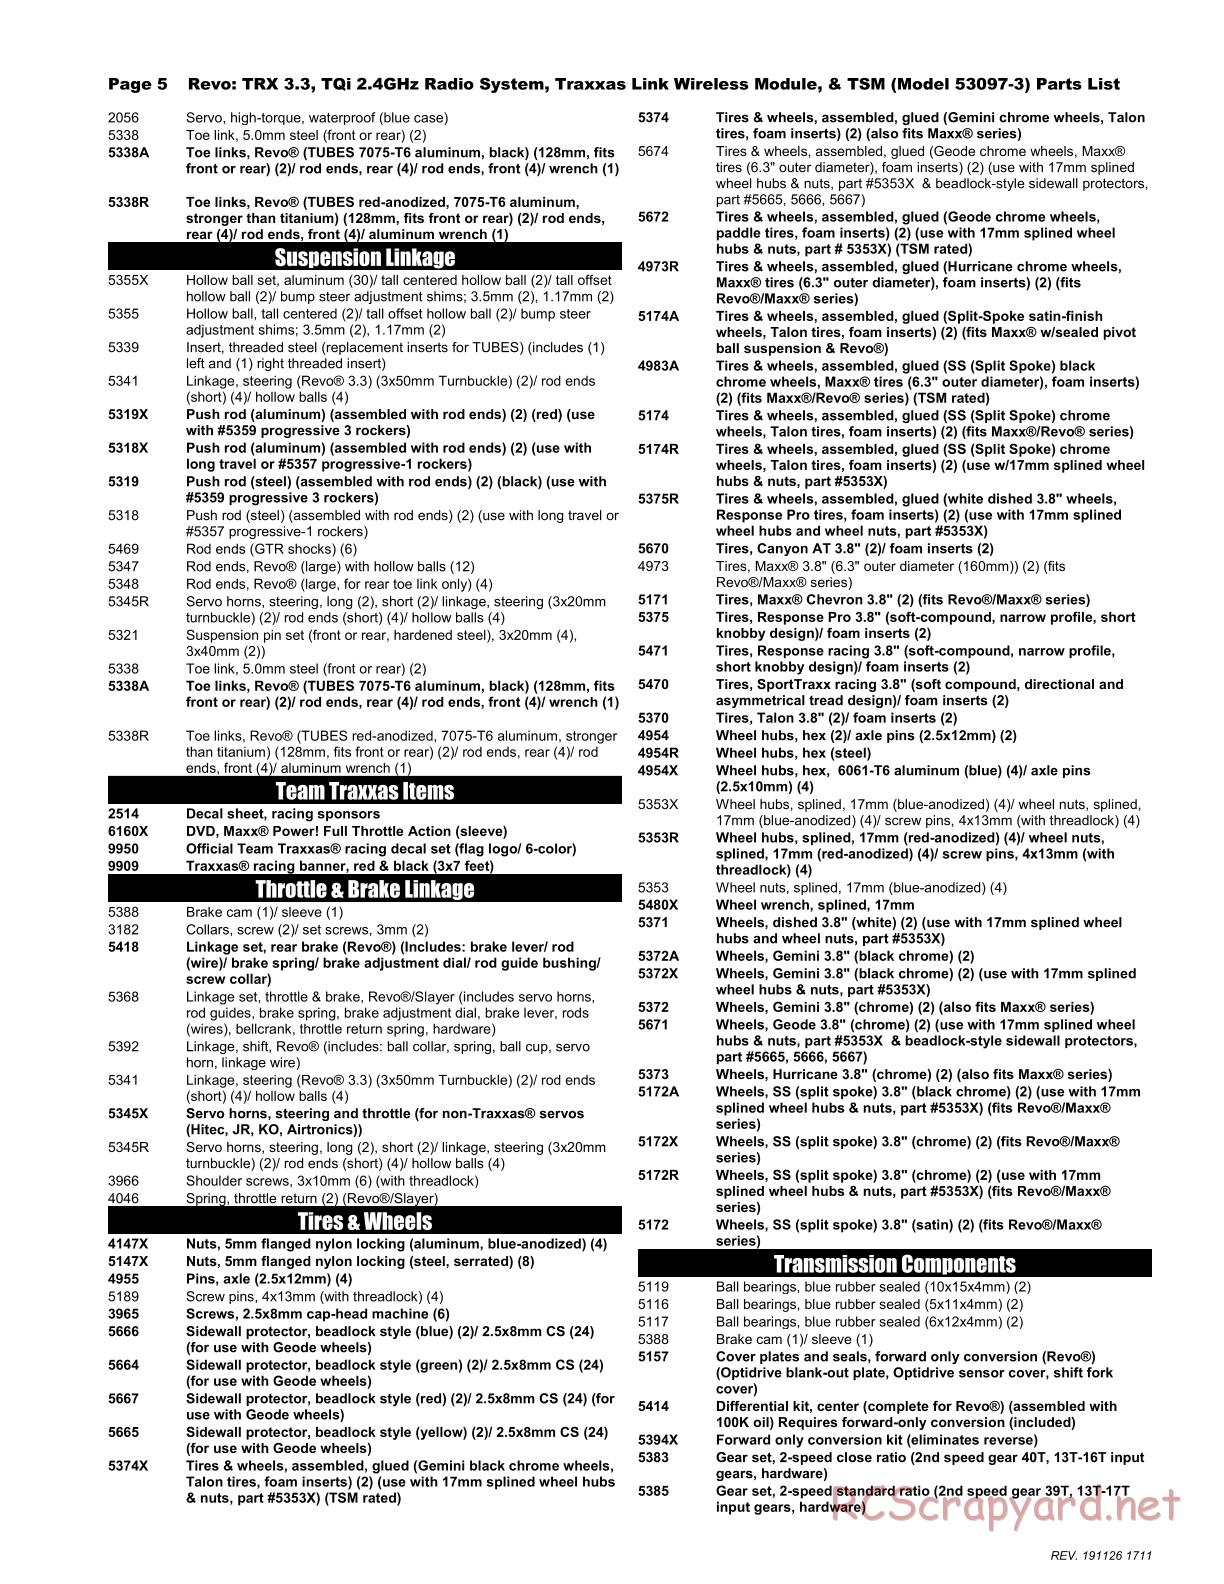 Traxxas - Revo 3.3 TSM - Parts List - Page 5